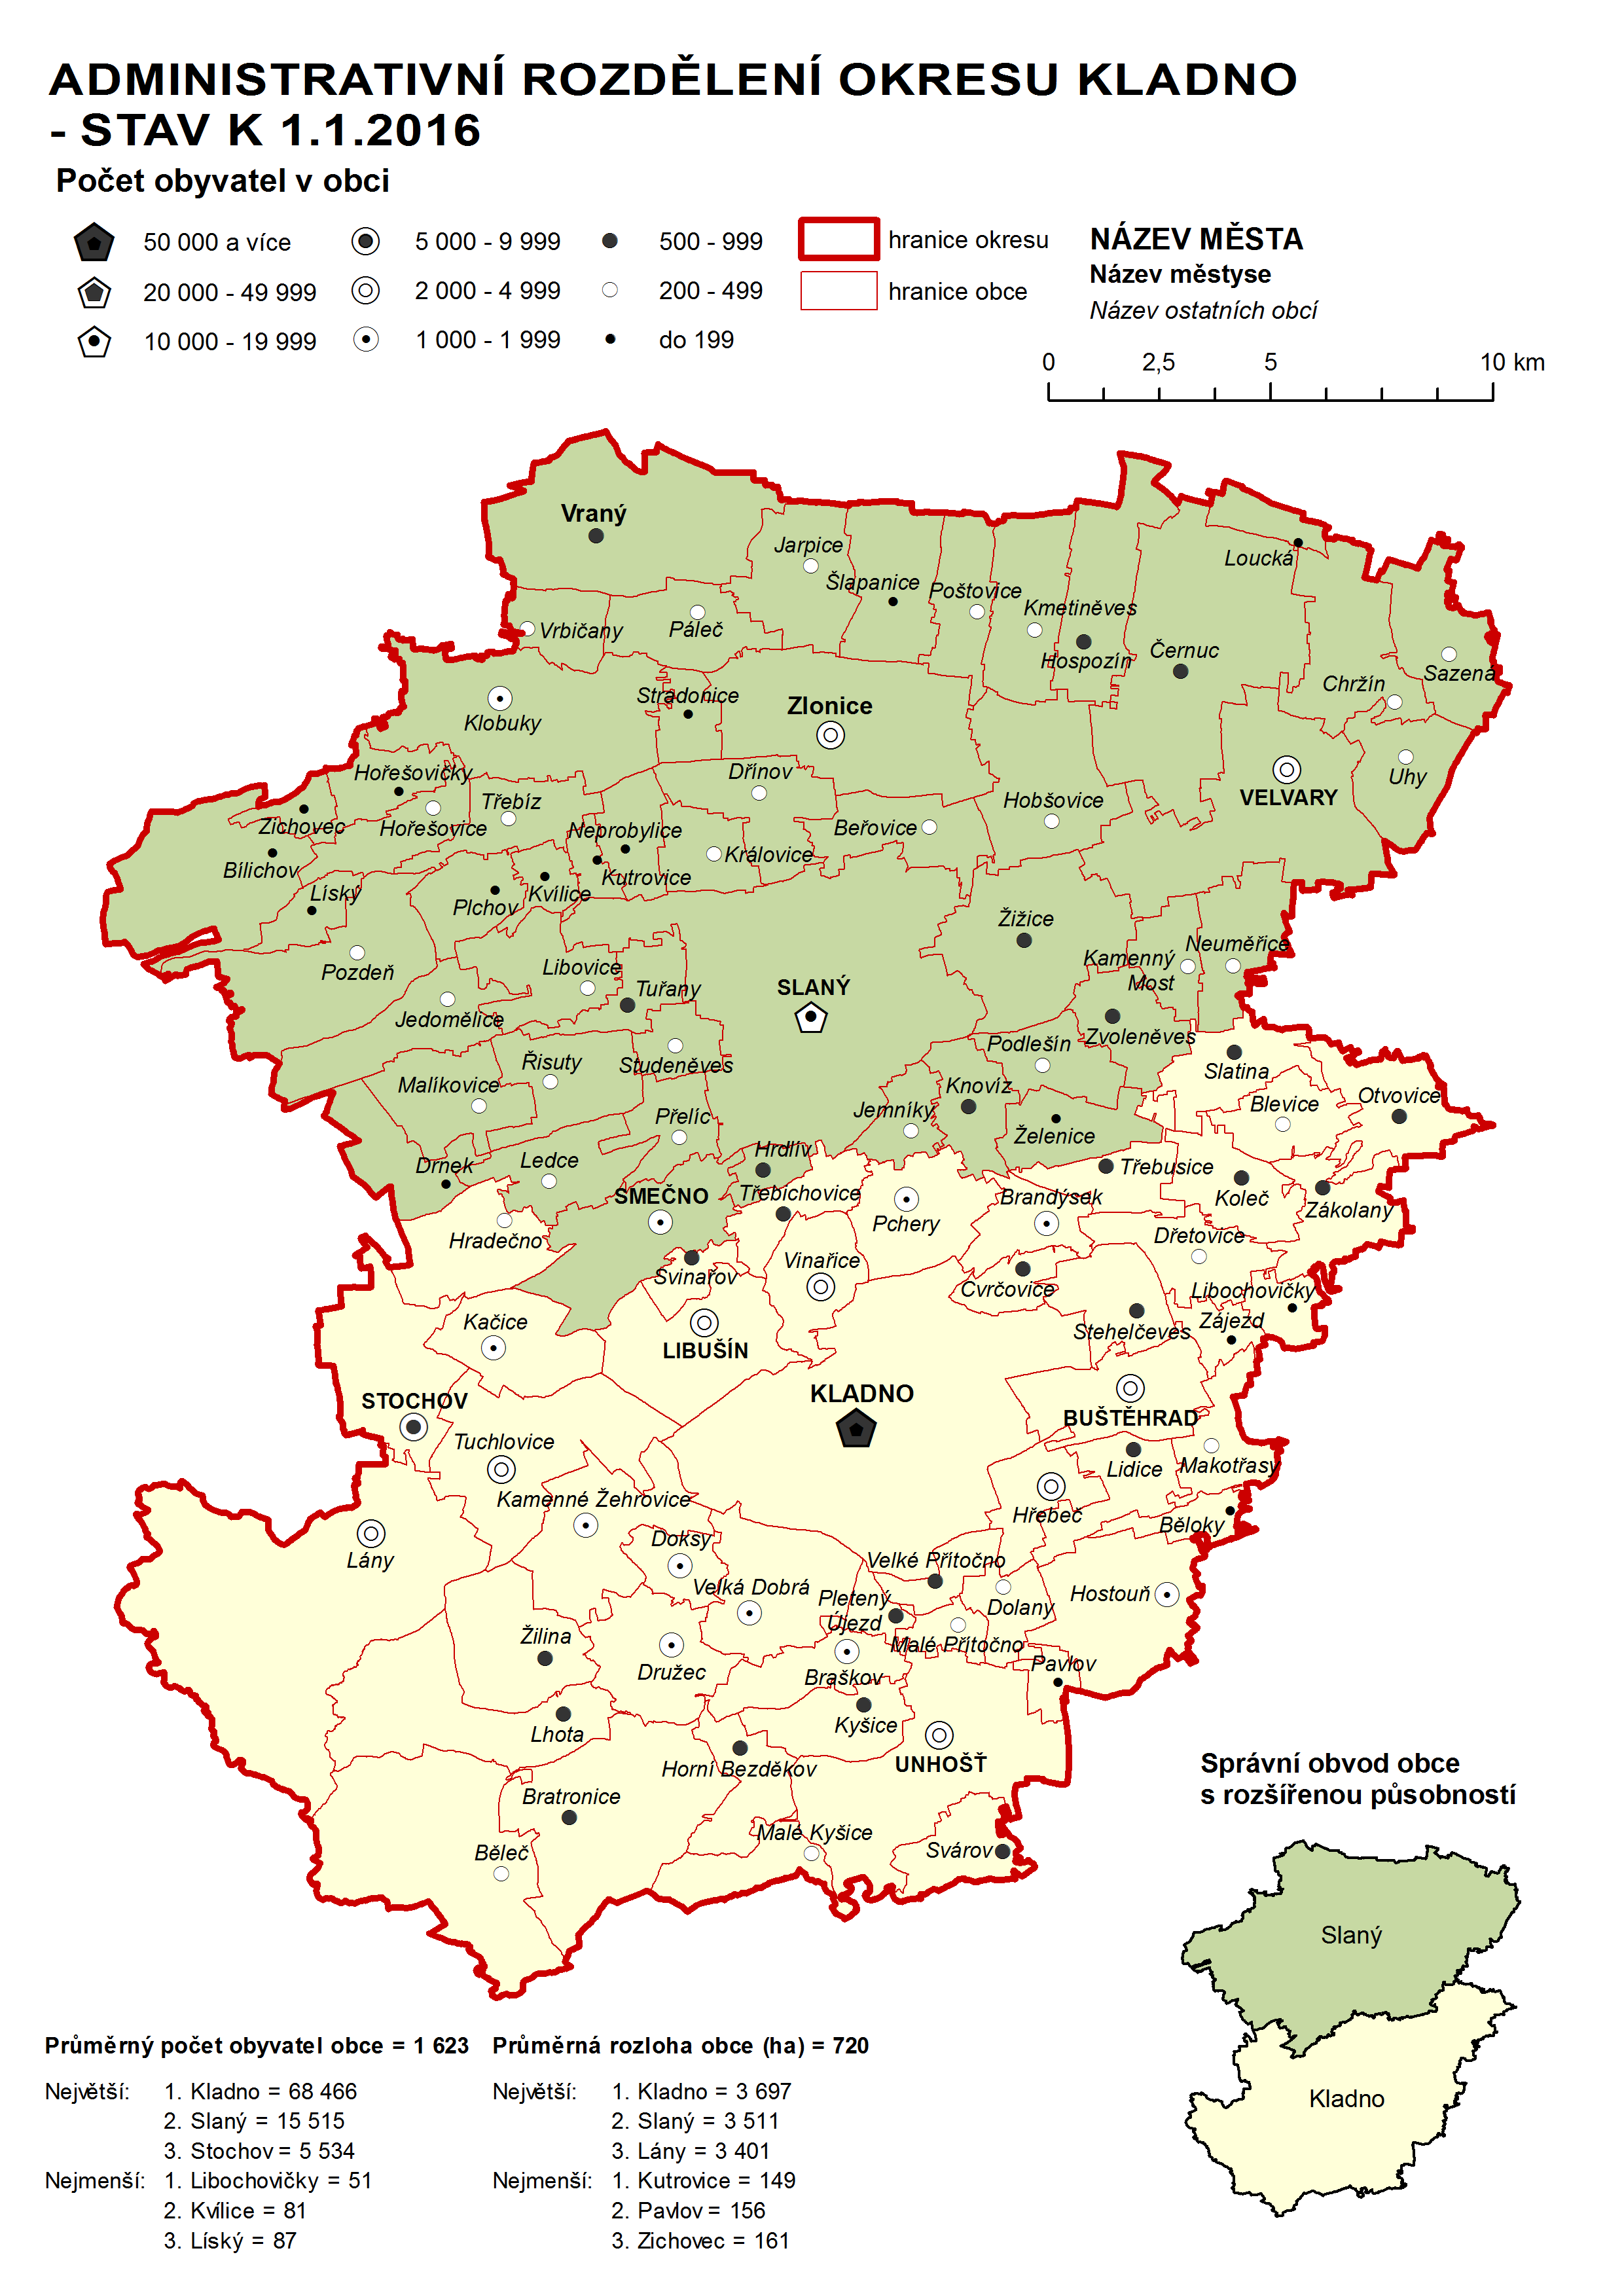 Administrativni rozdělení okresu Kladno - stav k 1.1.2016